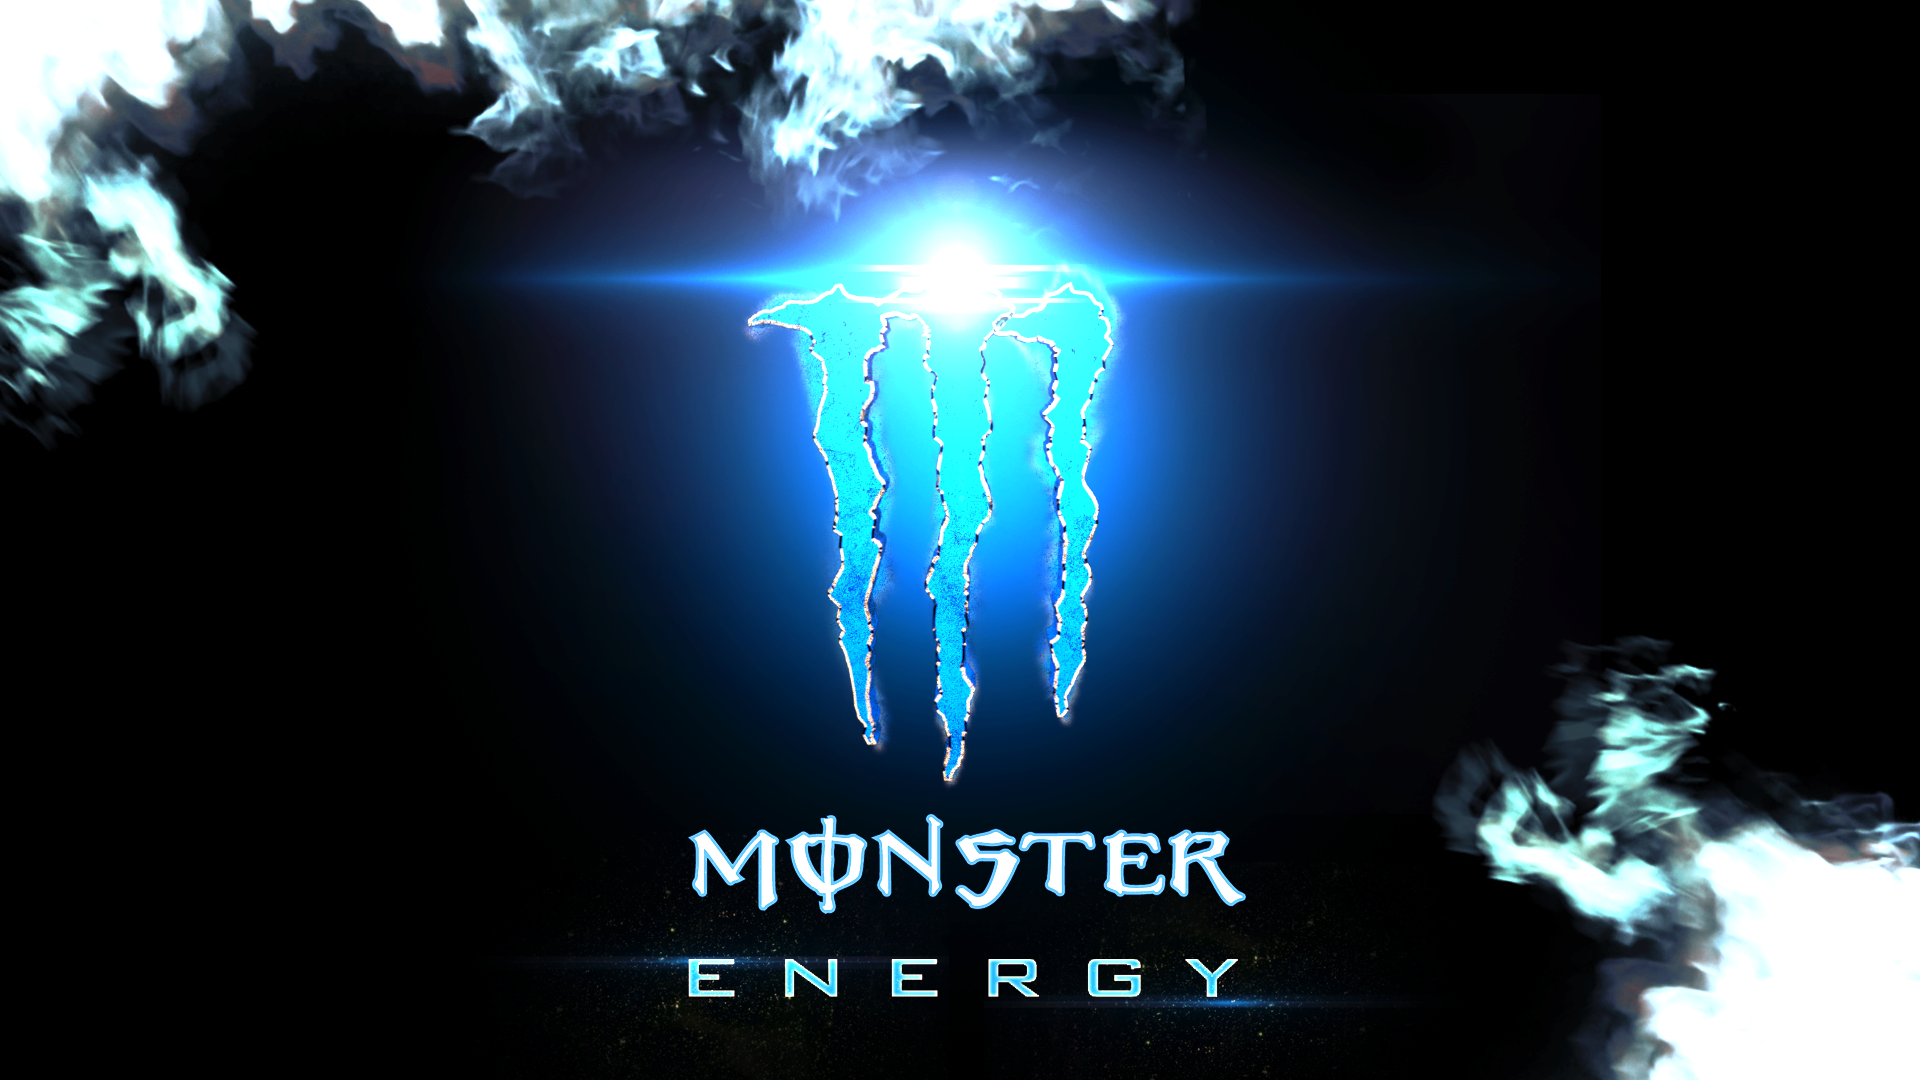 壁紙 Monster Energy 画像 最高の画像新しい壁紙ehd